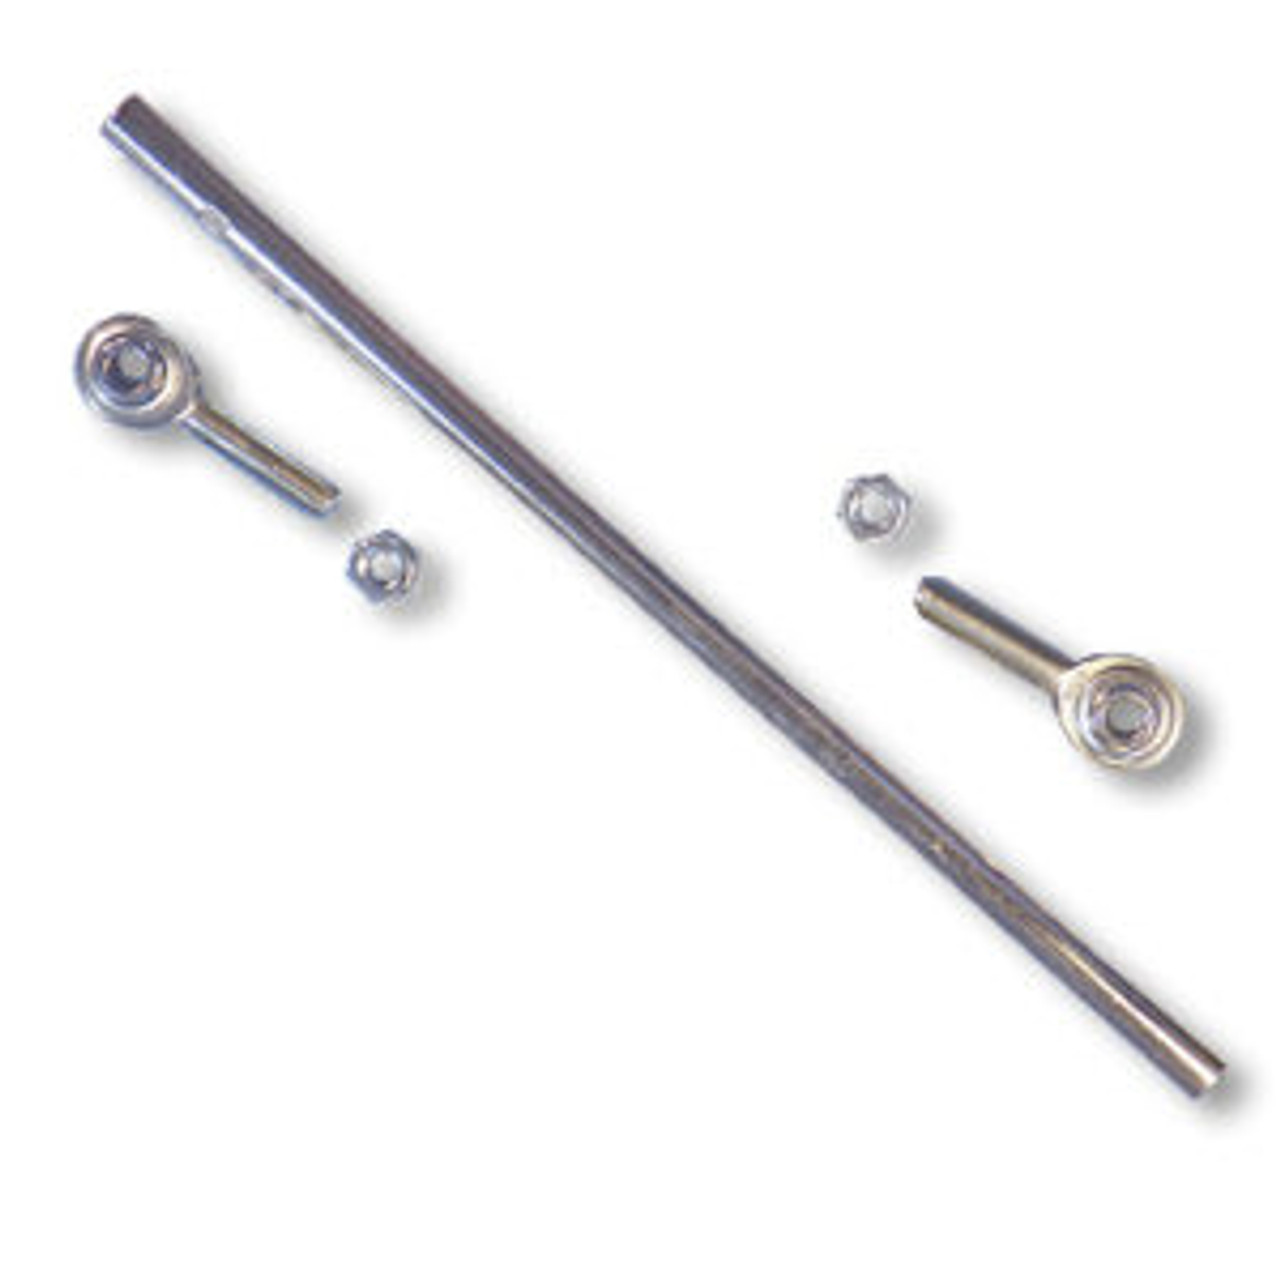 Tubular Tie Rod Kit - 9-7/8" Length, 5/16-24 Thread, Deluxe Rod Ends